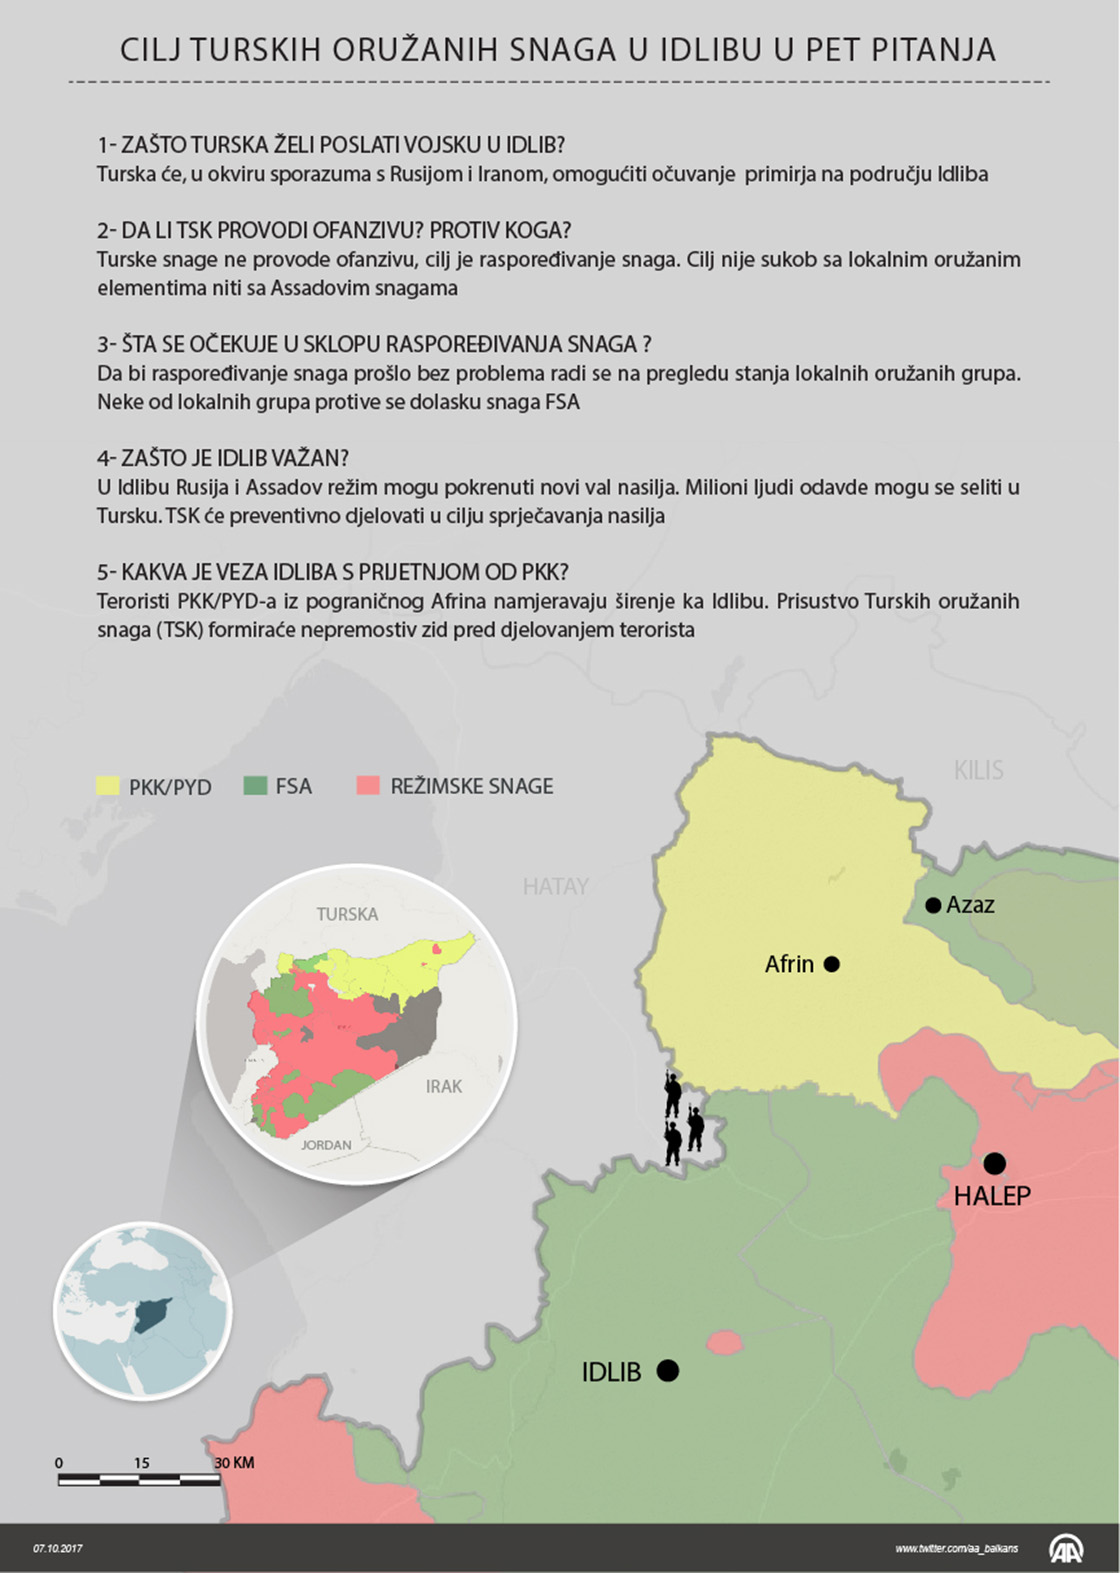 Cilj turskih snaga u Idlibu u pet pitanja